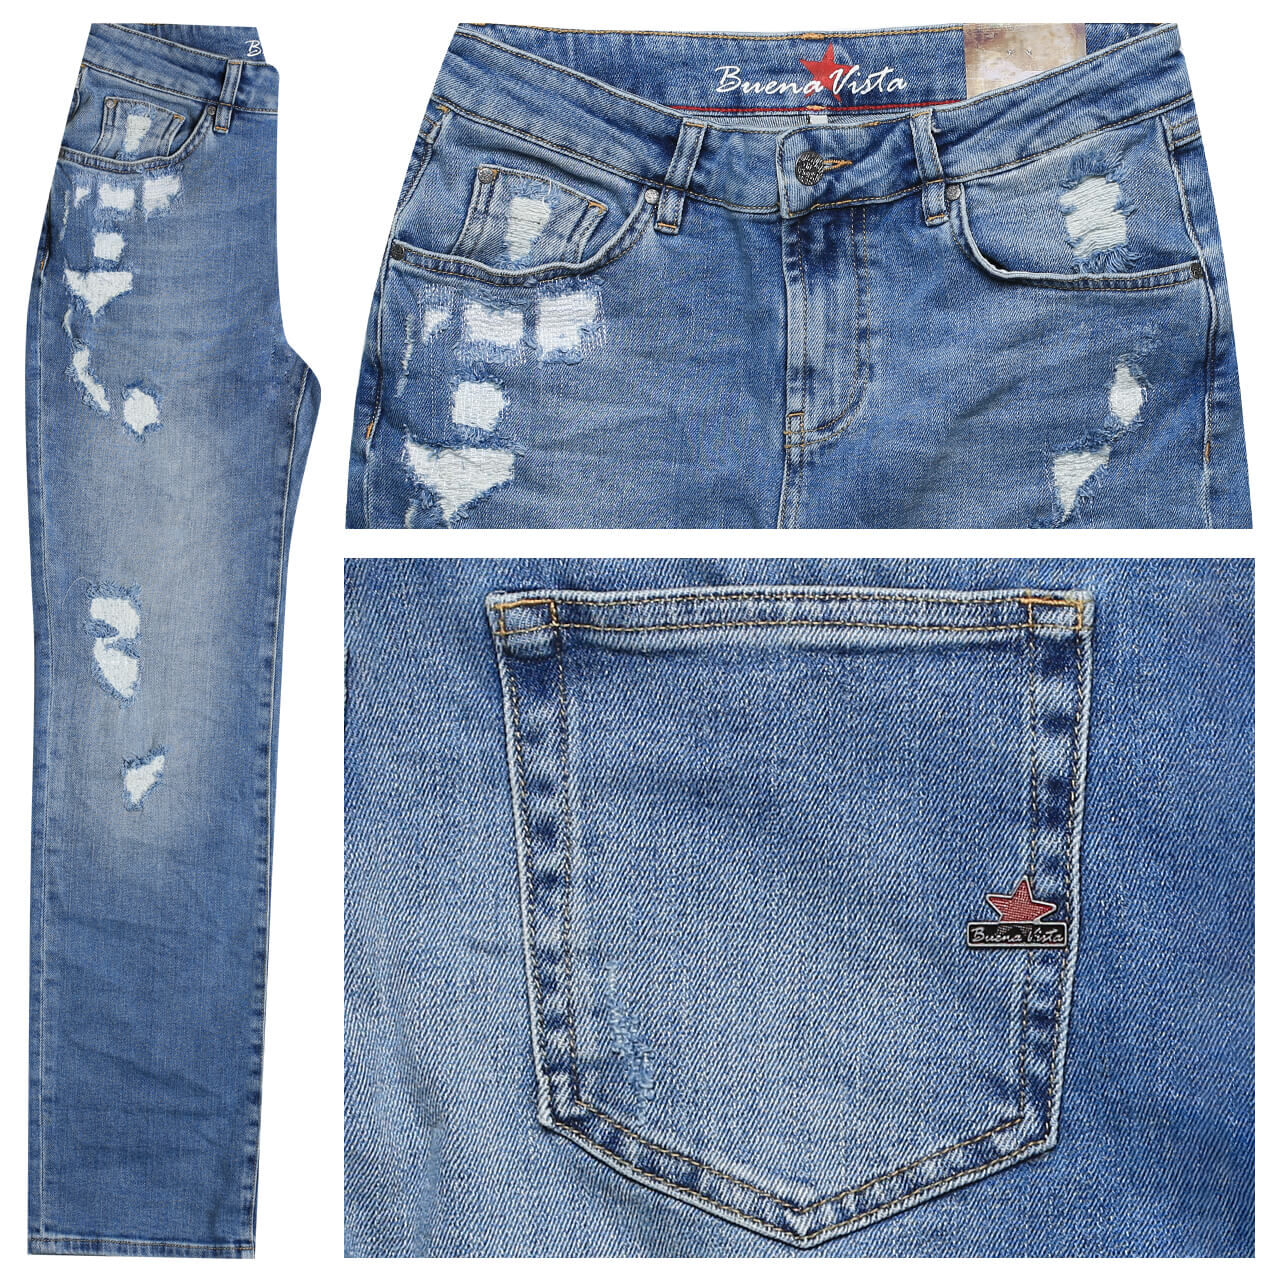 Buena Vista Jeans Filippa Stretch für Damen in Hellblau verwaschen mit Destroyed-Effekten, FarbNr.: 2930